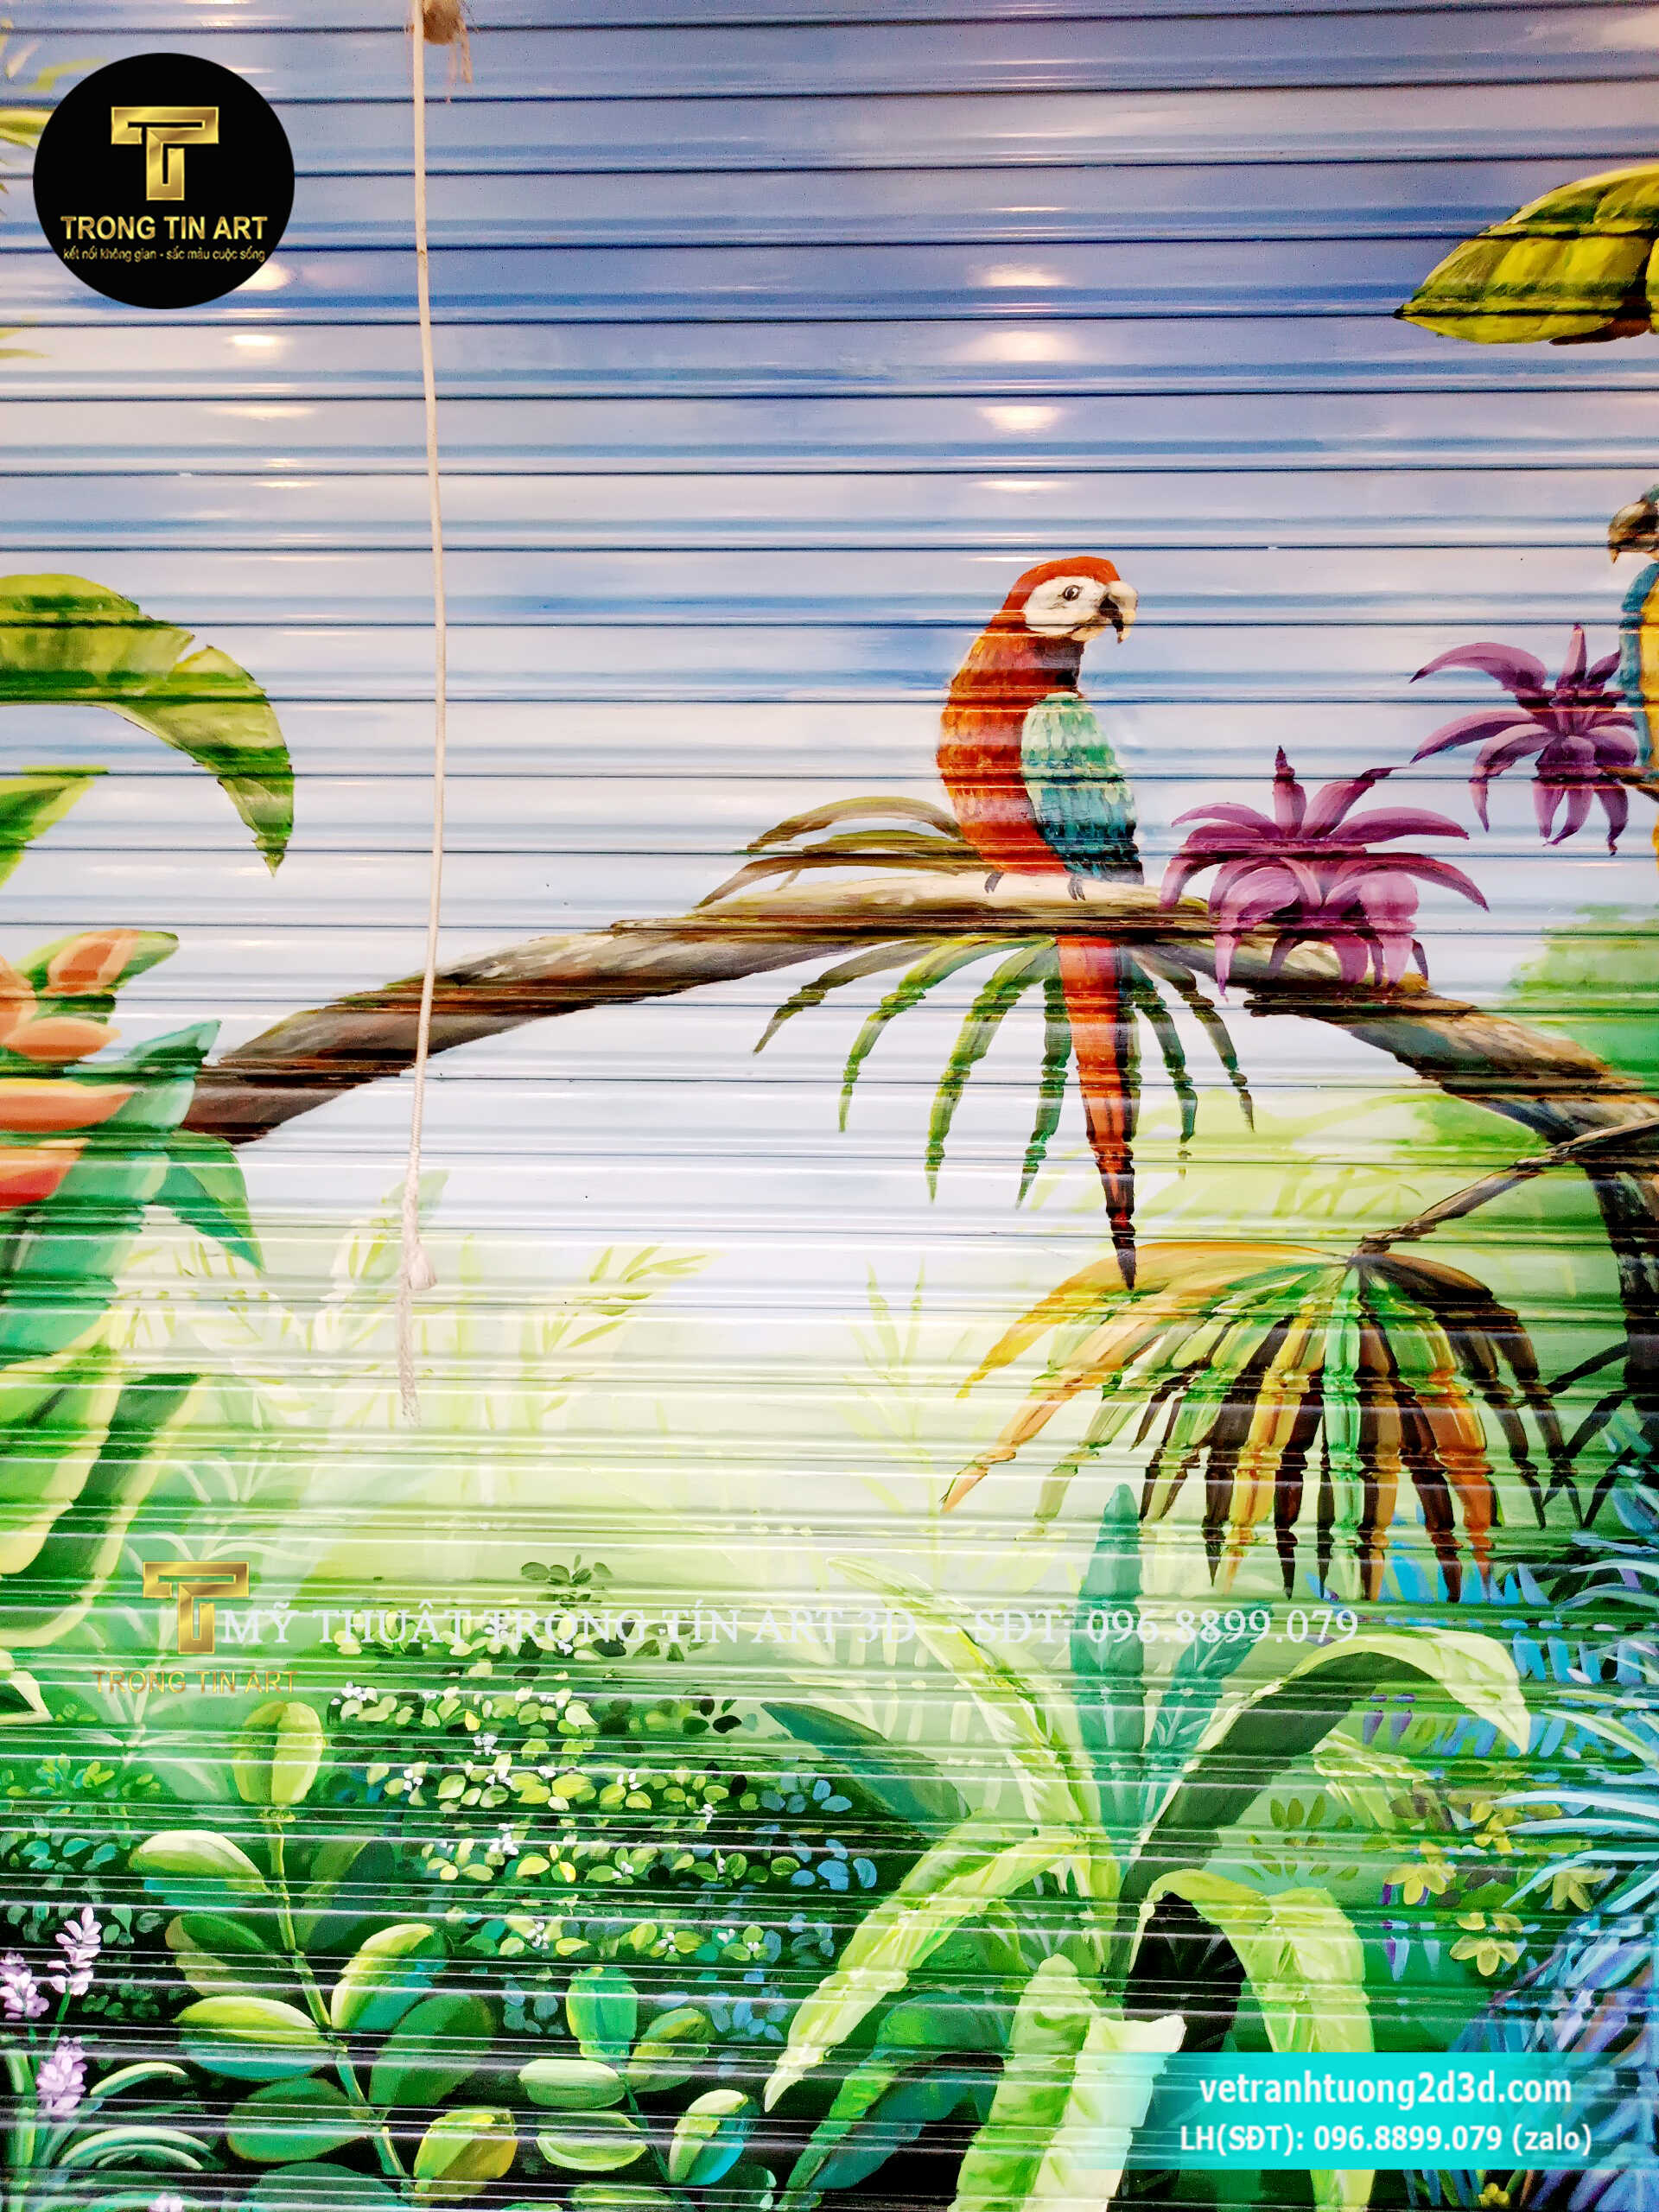 vẽ tranh trên cửa cuốn,vẽ tranh cửa cuốn,vẽ logo trên cửa cuốn,vẽ tranh hoa lá,vẽ tranh tropical,vẽ tranh rừng nhiệt đới,tranh tường 3d